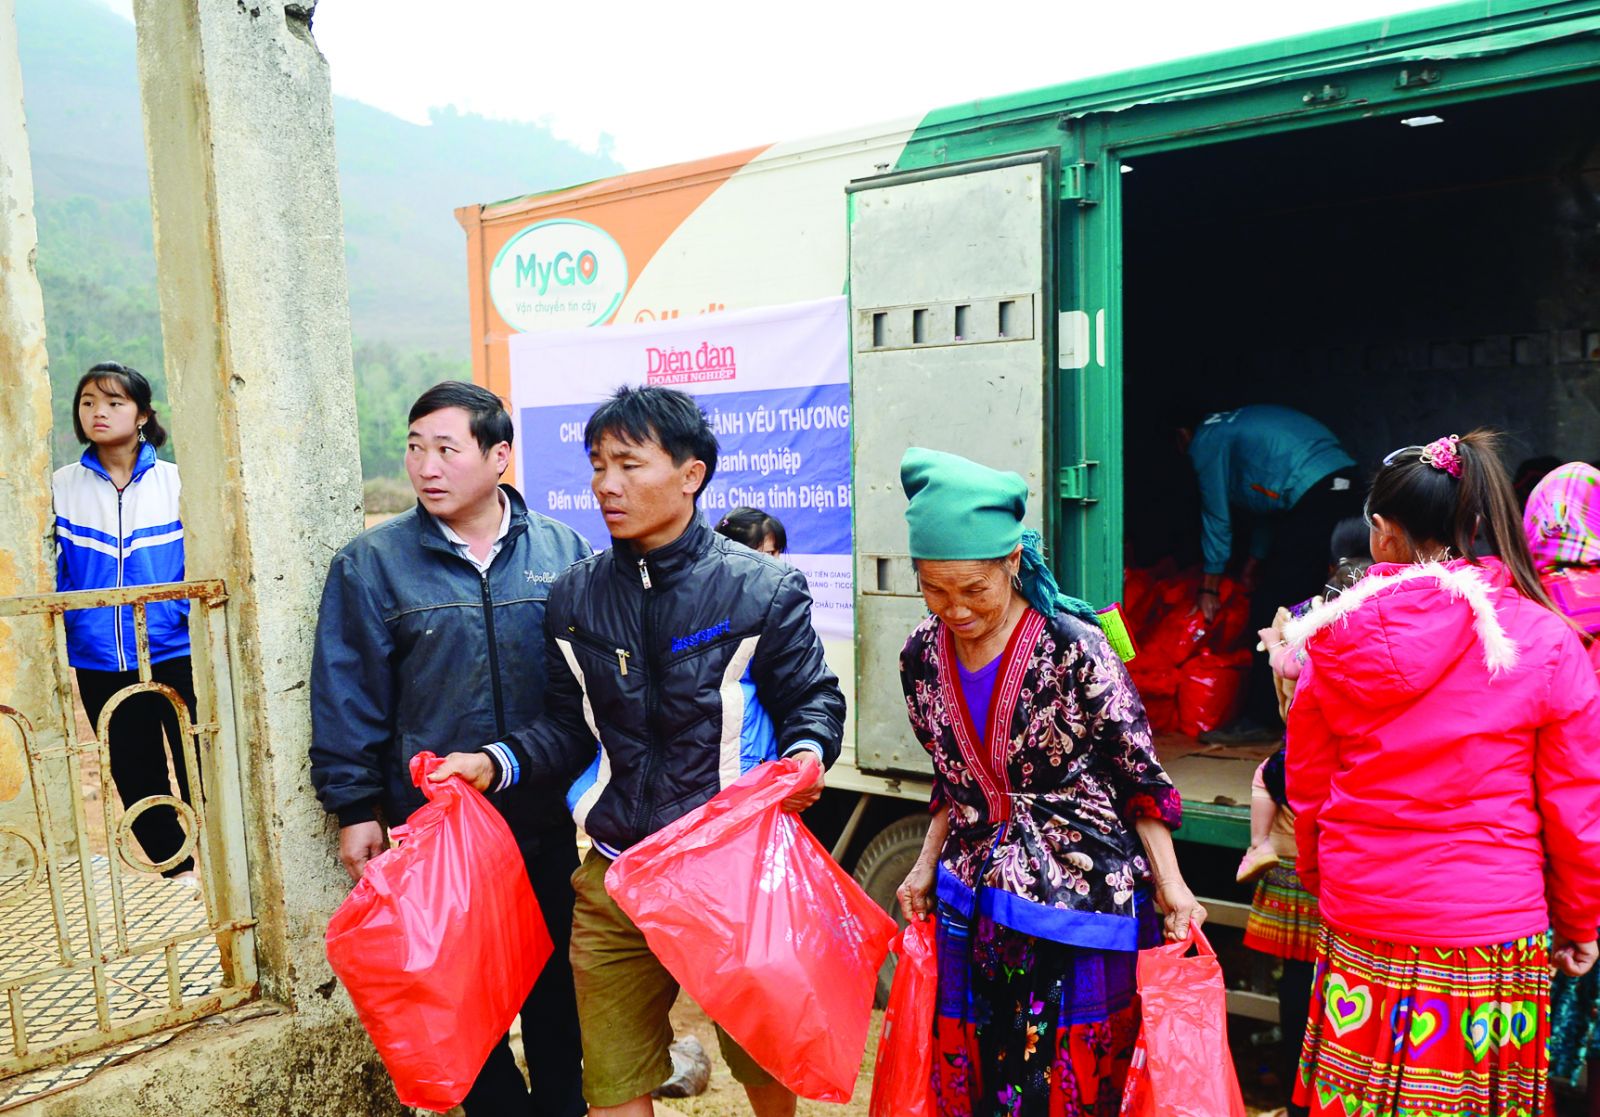  Tạp chí Diễn đàn Doanh nghiệp phối hợp với các doanh nghiệp tổ chức hoạt động tặng quà cho người nghèo tại huyện Tủa Chùa, tỉnh Điện Biên, năm 2021.